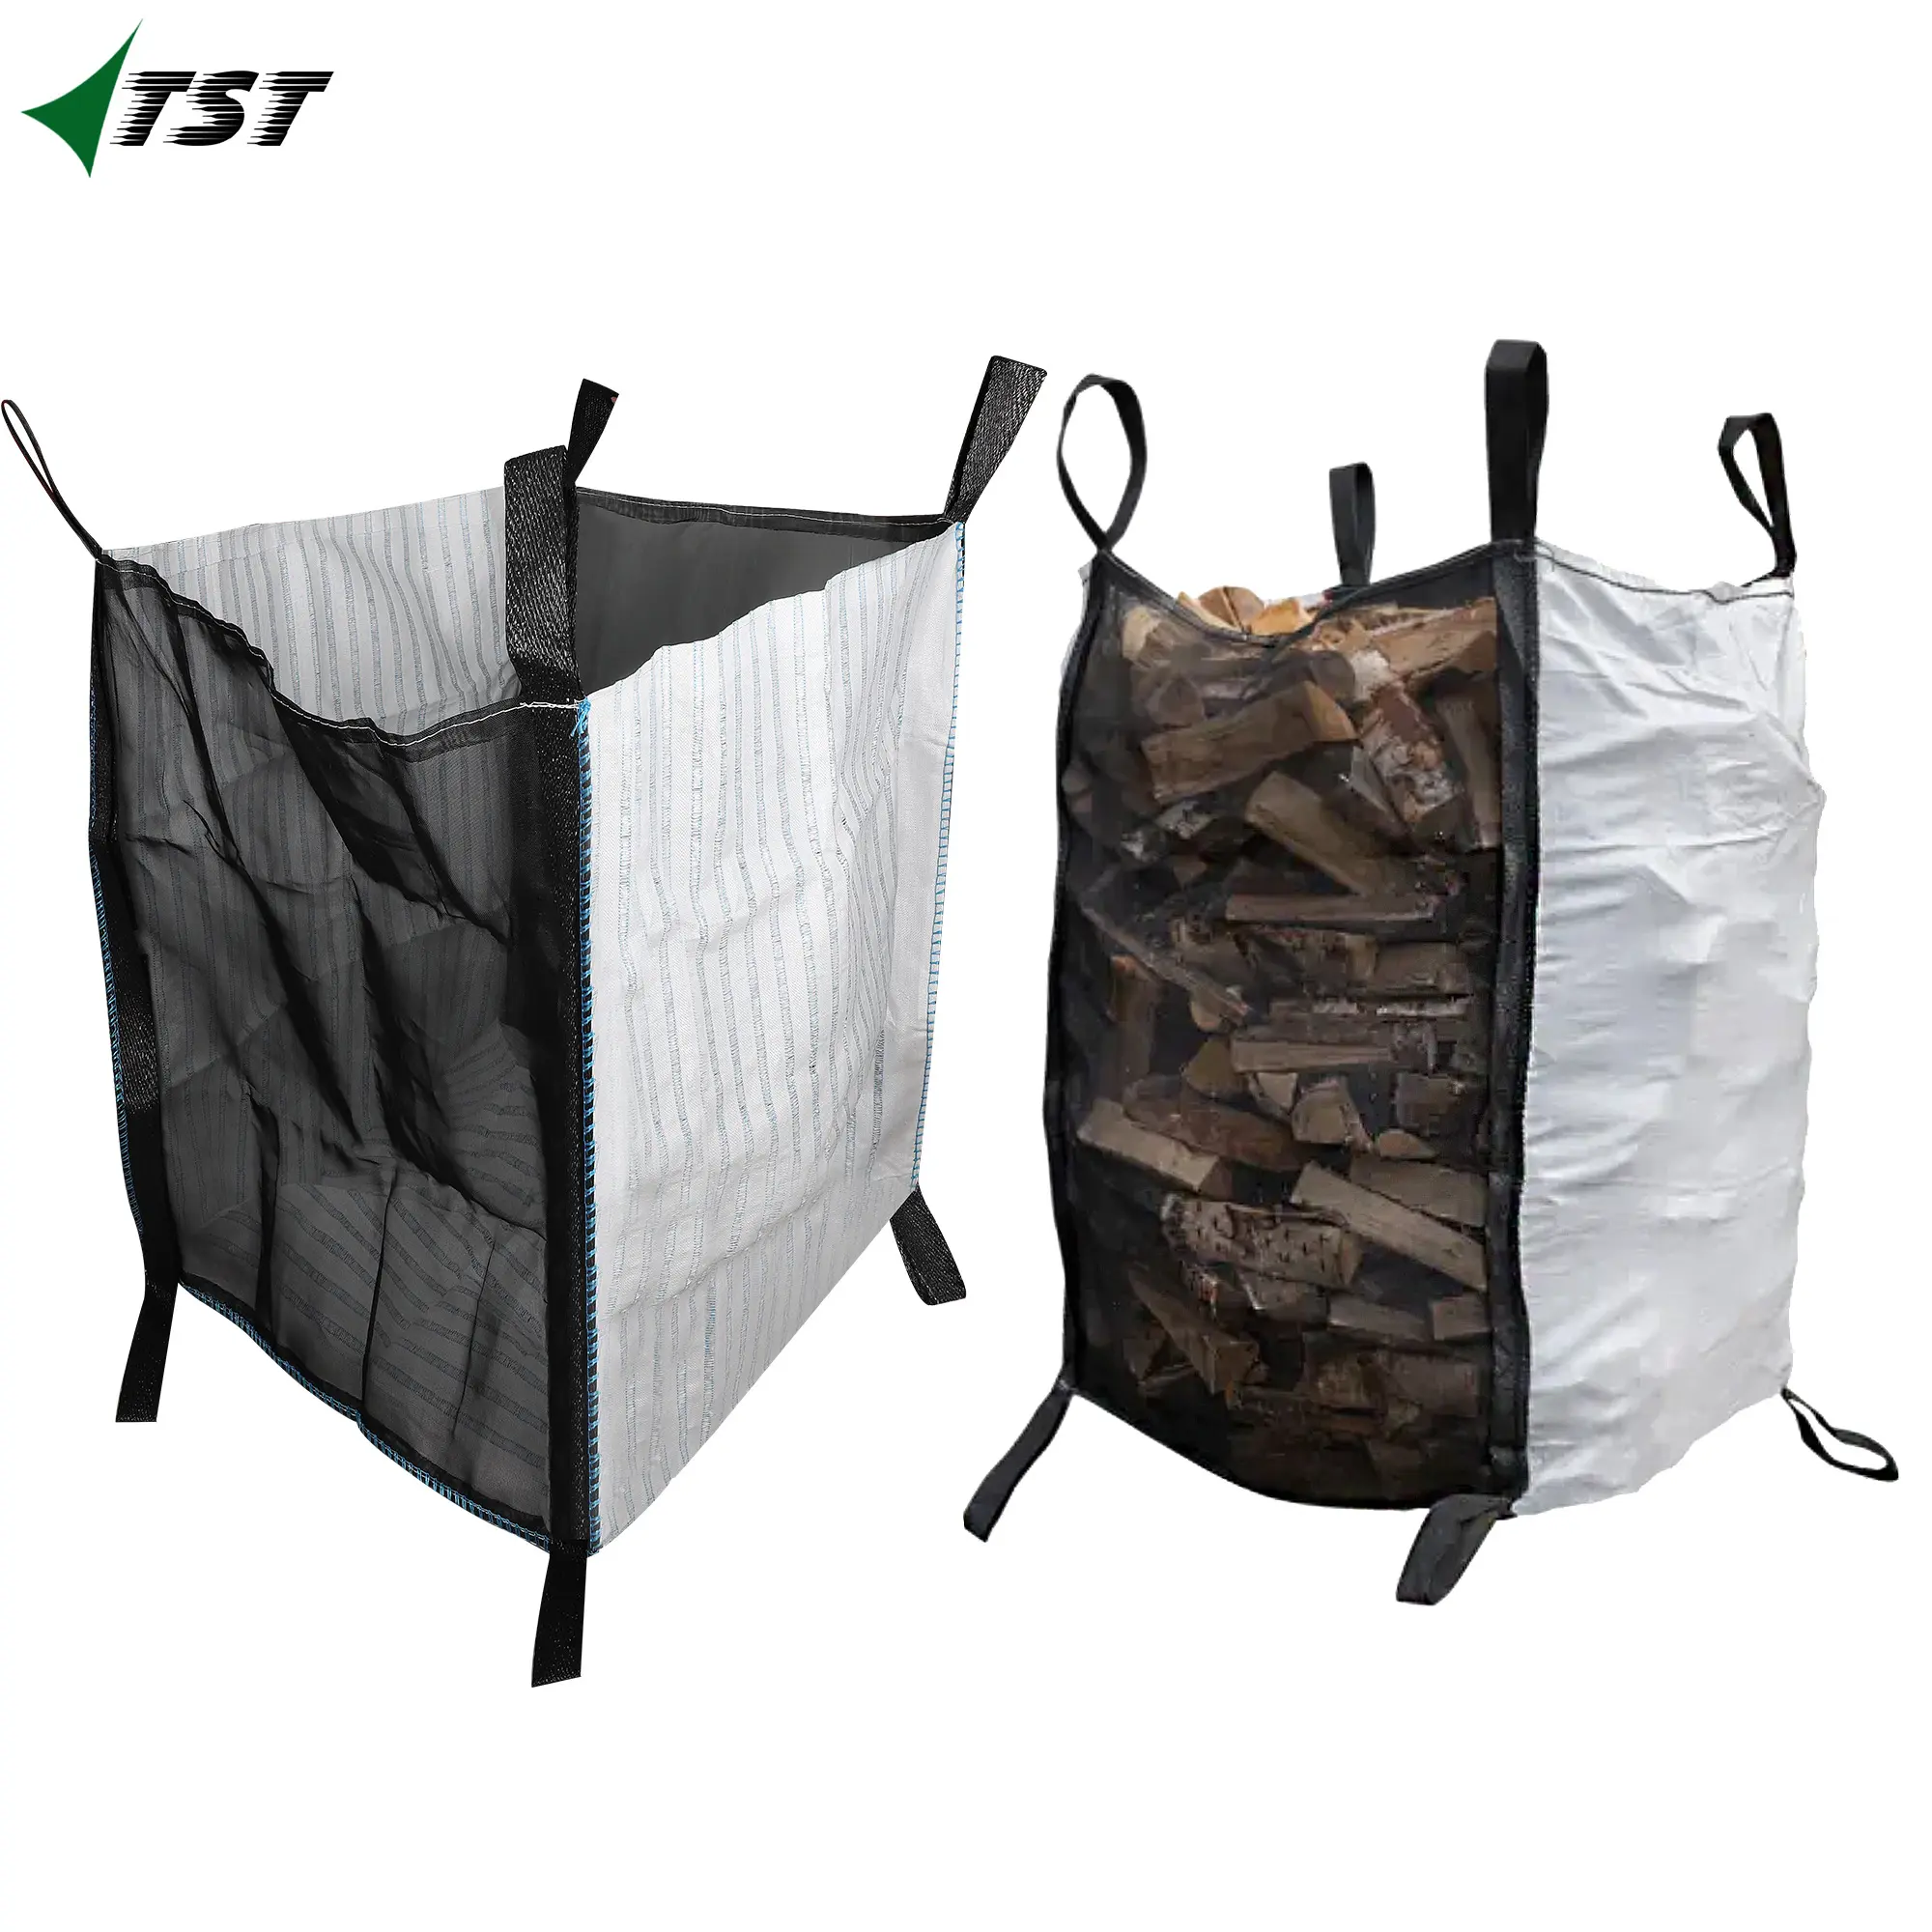 Saco de malha tecido impermeável com alta qualidade e baixo preço lenha malha saco com laços preto e branco saco tecido para lenha